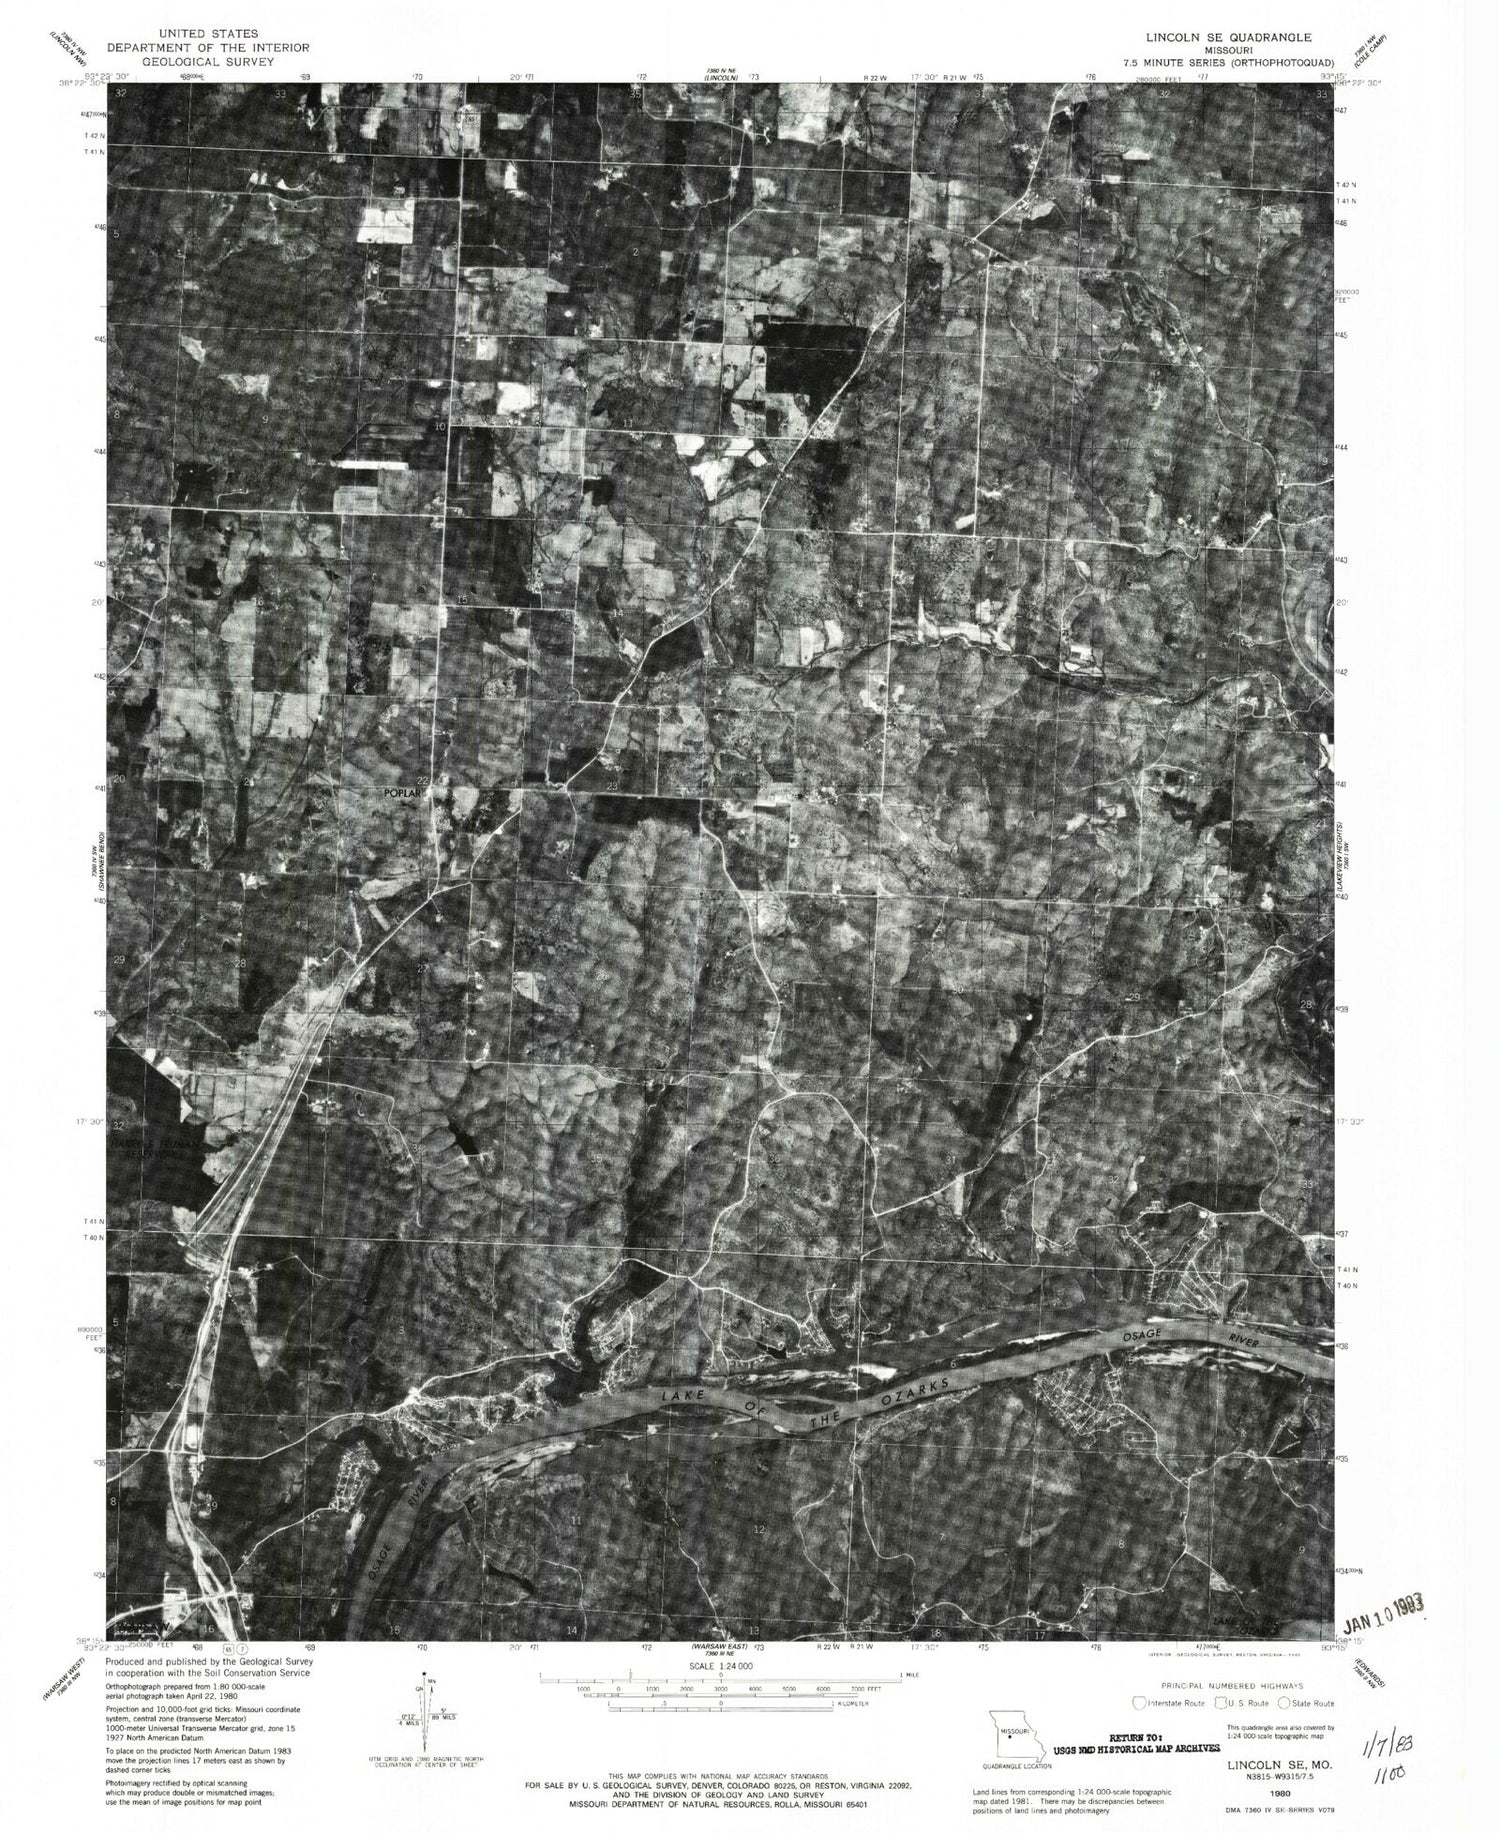 Classic USGS Lincoln SE Missouri 7.5'x7.5' Topo Map Image